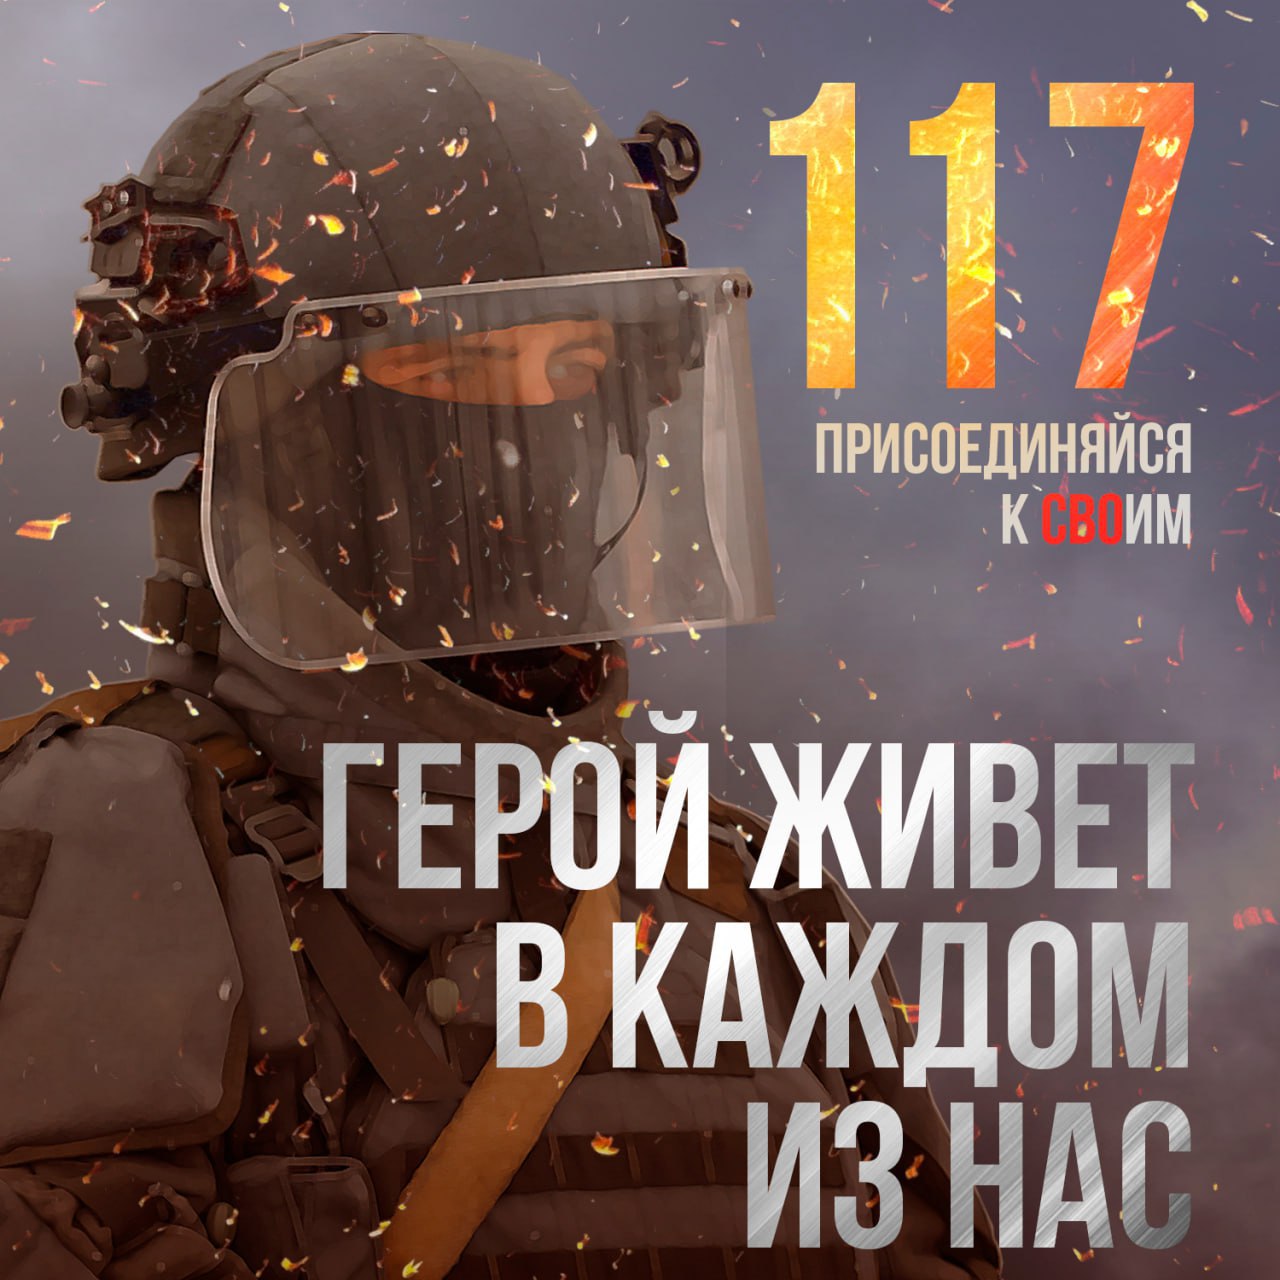 Жители Белгородского района могут заключить контракт на военную службу.